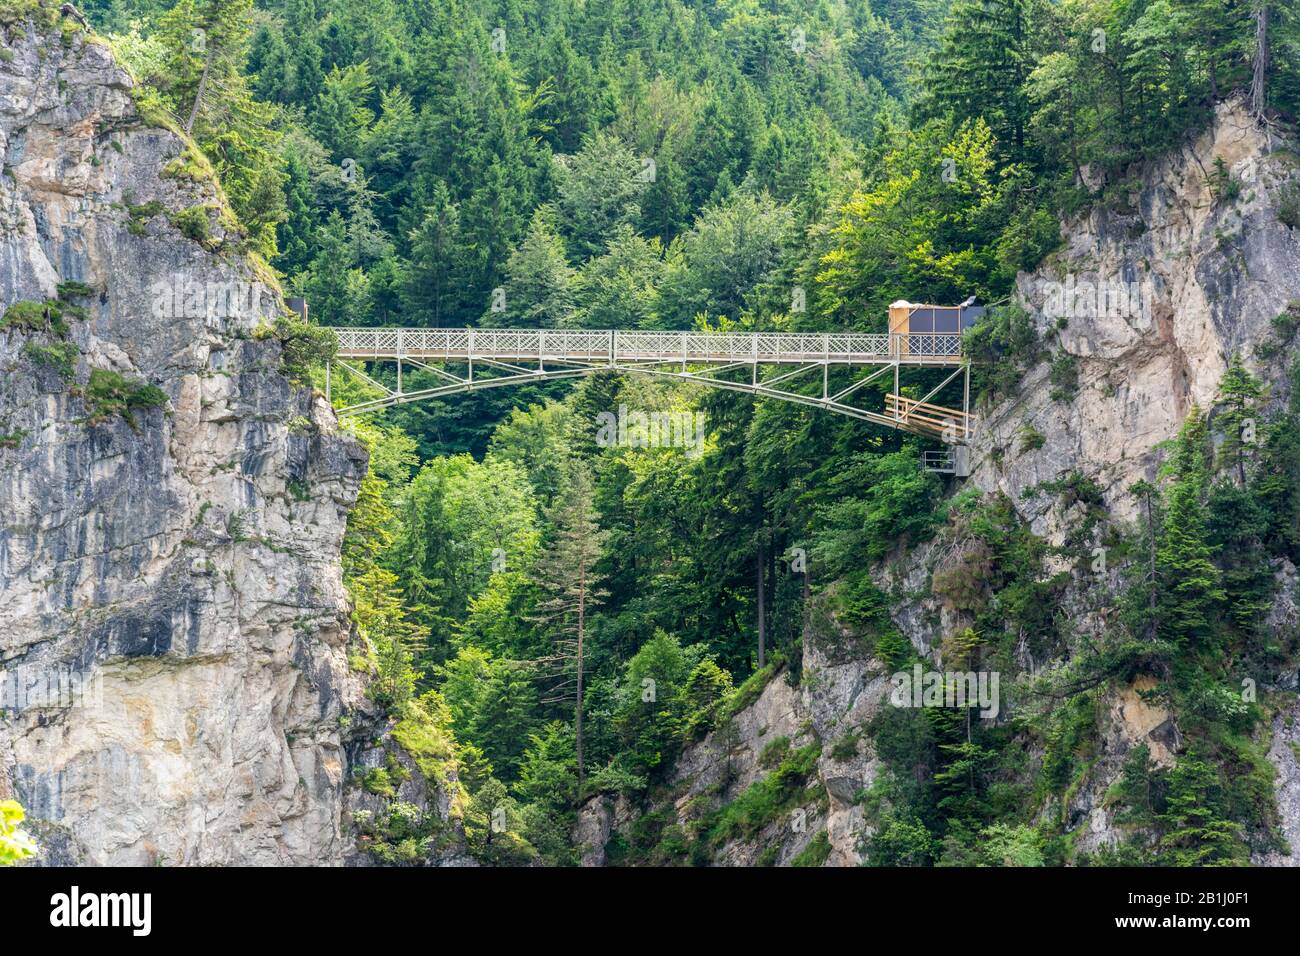 Marienbrücke überspannt die spektakuläre Pollat-Schlucht über einen Wasserfall, in der Nähe des Schlosses Neuschwanstein in Füssen. Stockfoto